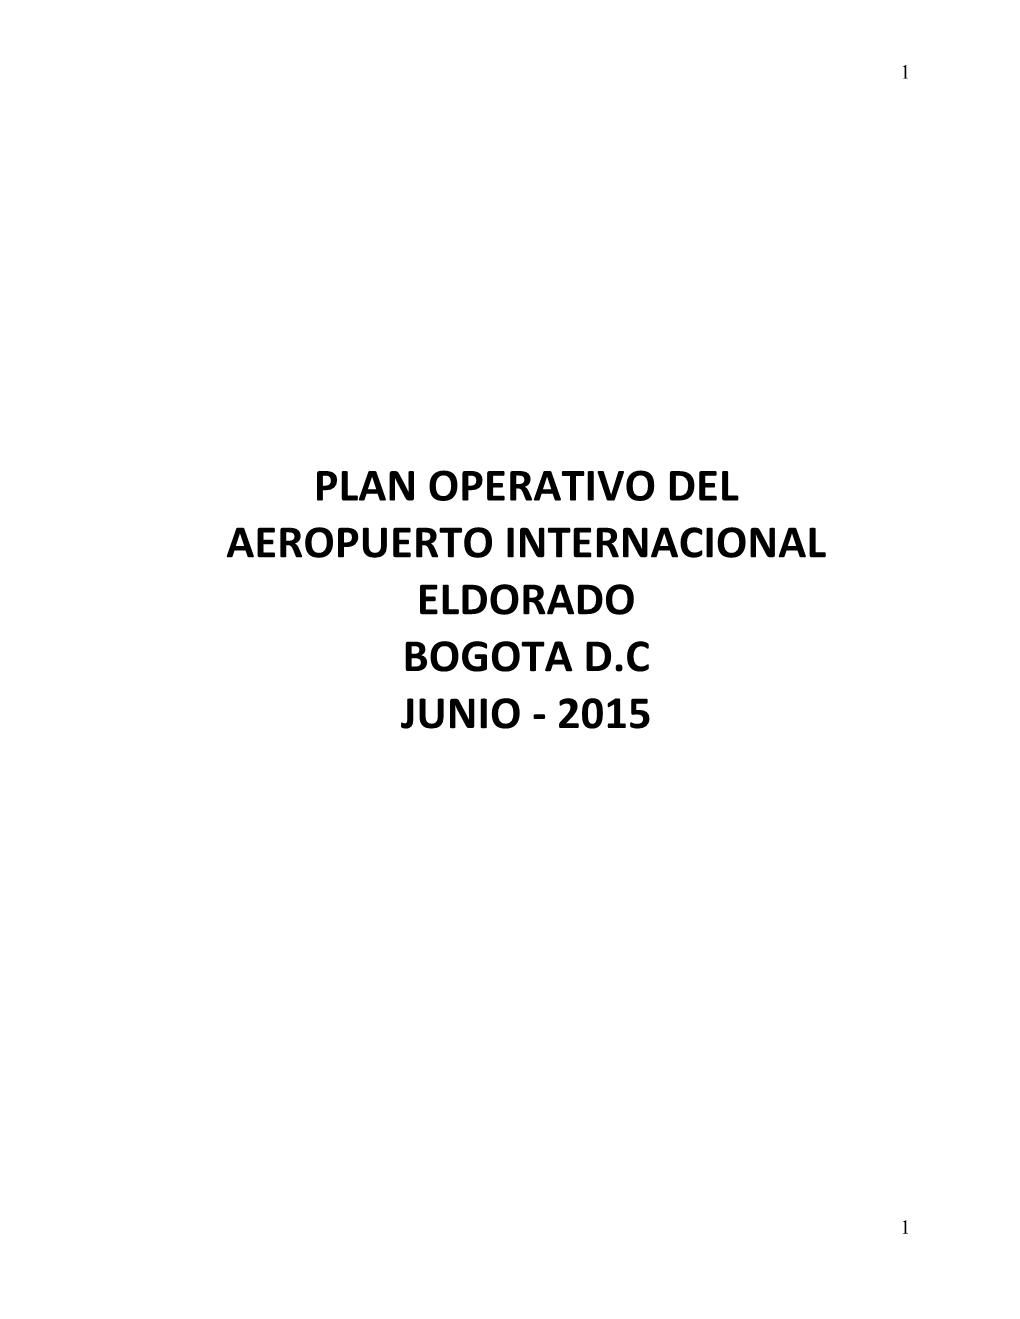 Plan Operativo Del Aeropuerto Internacional Eldorado Bogota D.C Junio - 2015